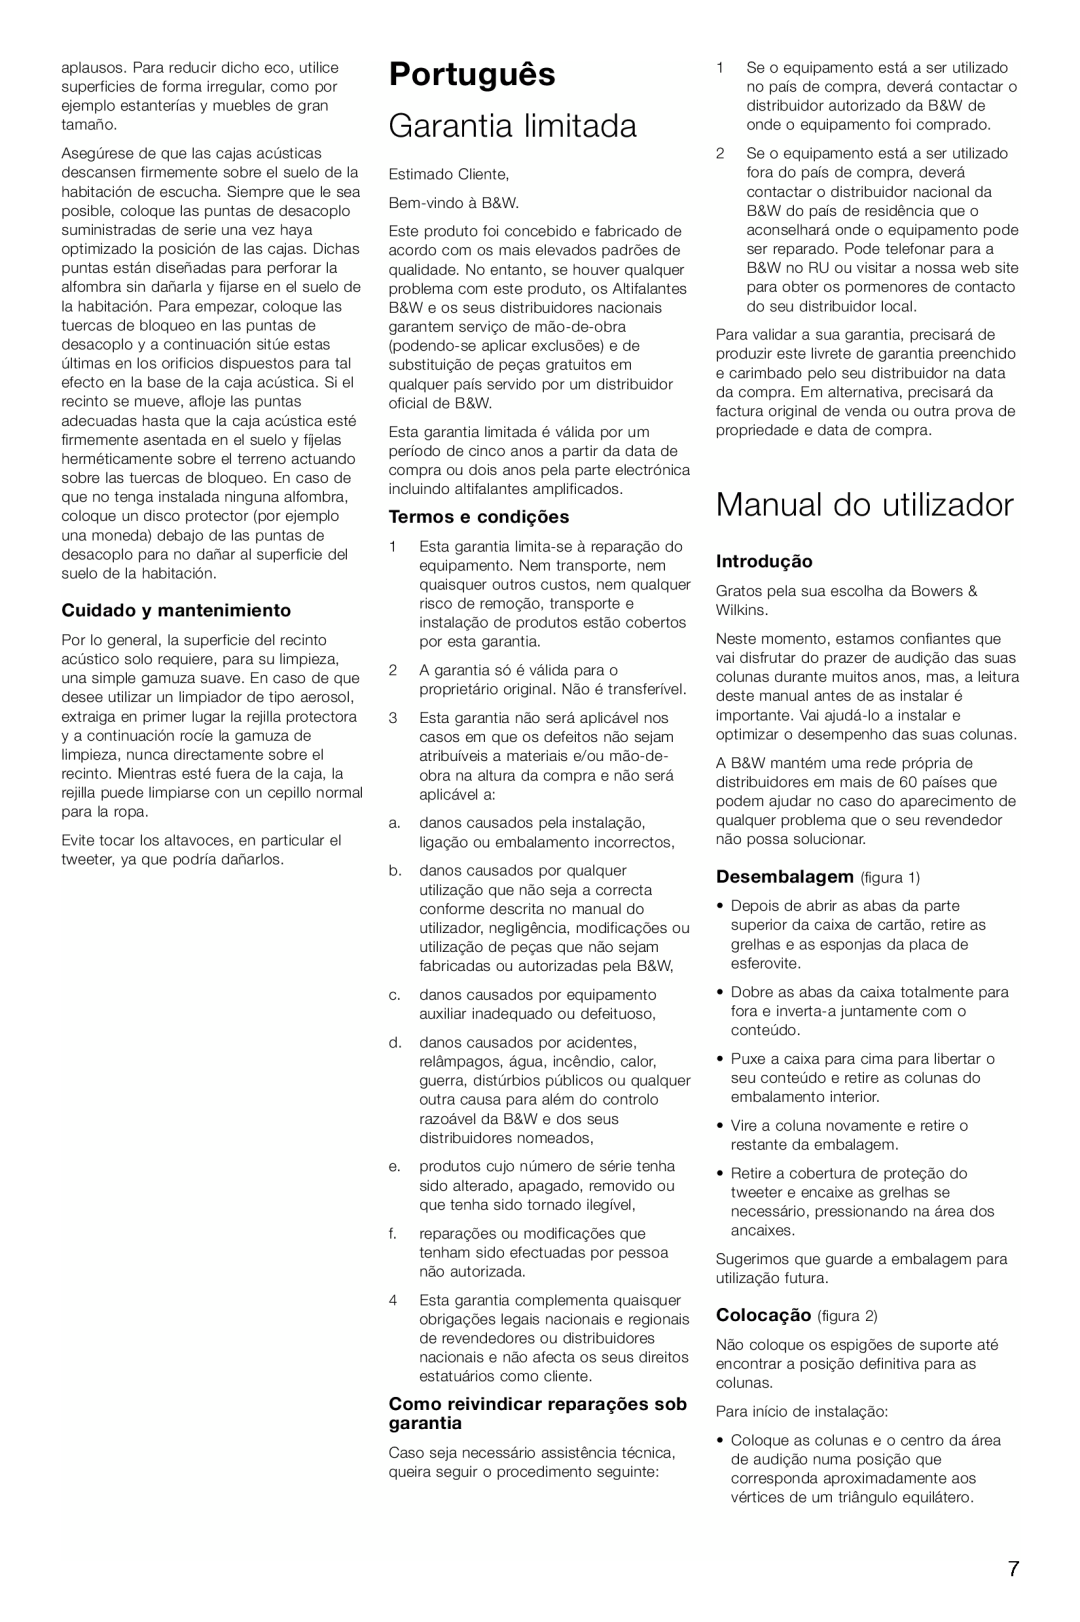 Bowers & Wilkins DM 604 S3 Português, Garantia limitada, Manual do utilizador, Cuidado y mantenimiento, Termos e condições 